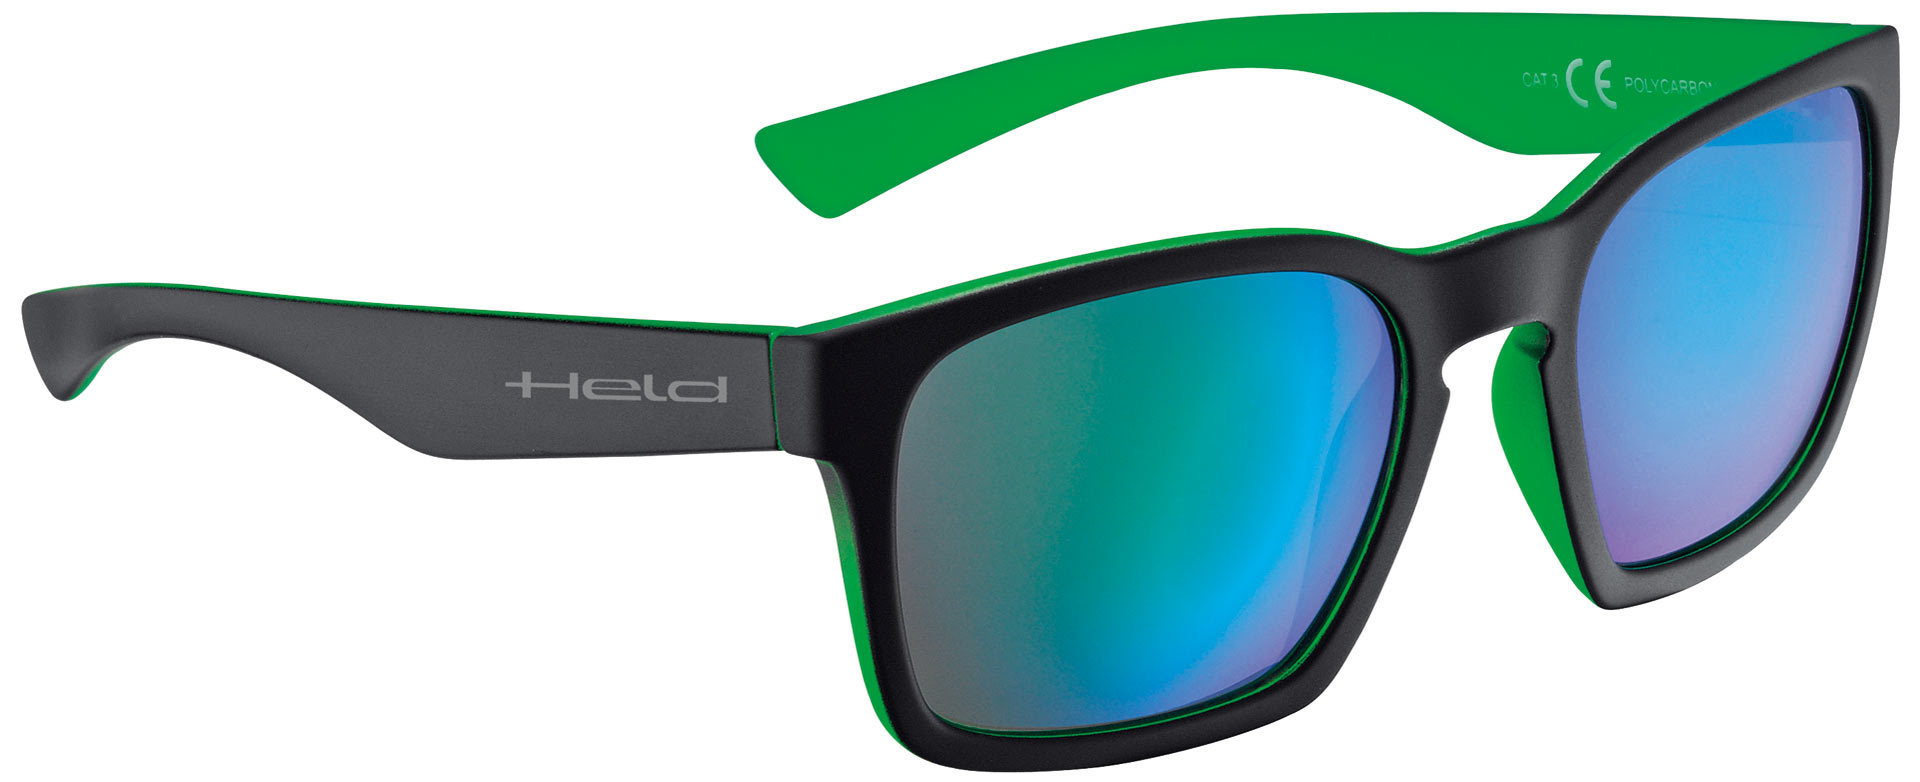 очки held 9541 солнцезащитные зеленый Очки Held 9740 солнцезащитные, черный/зеленый